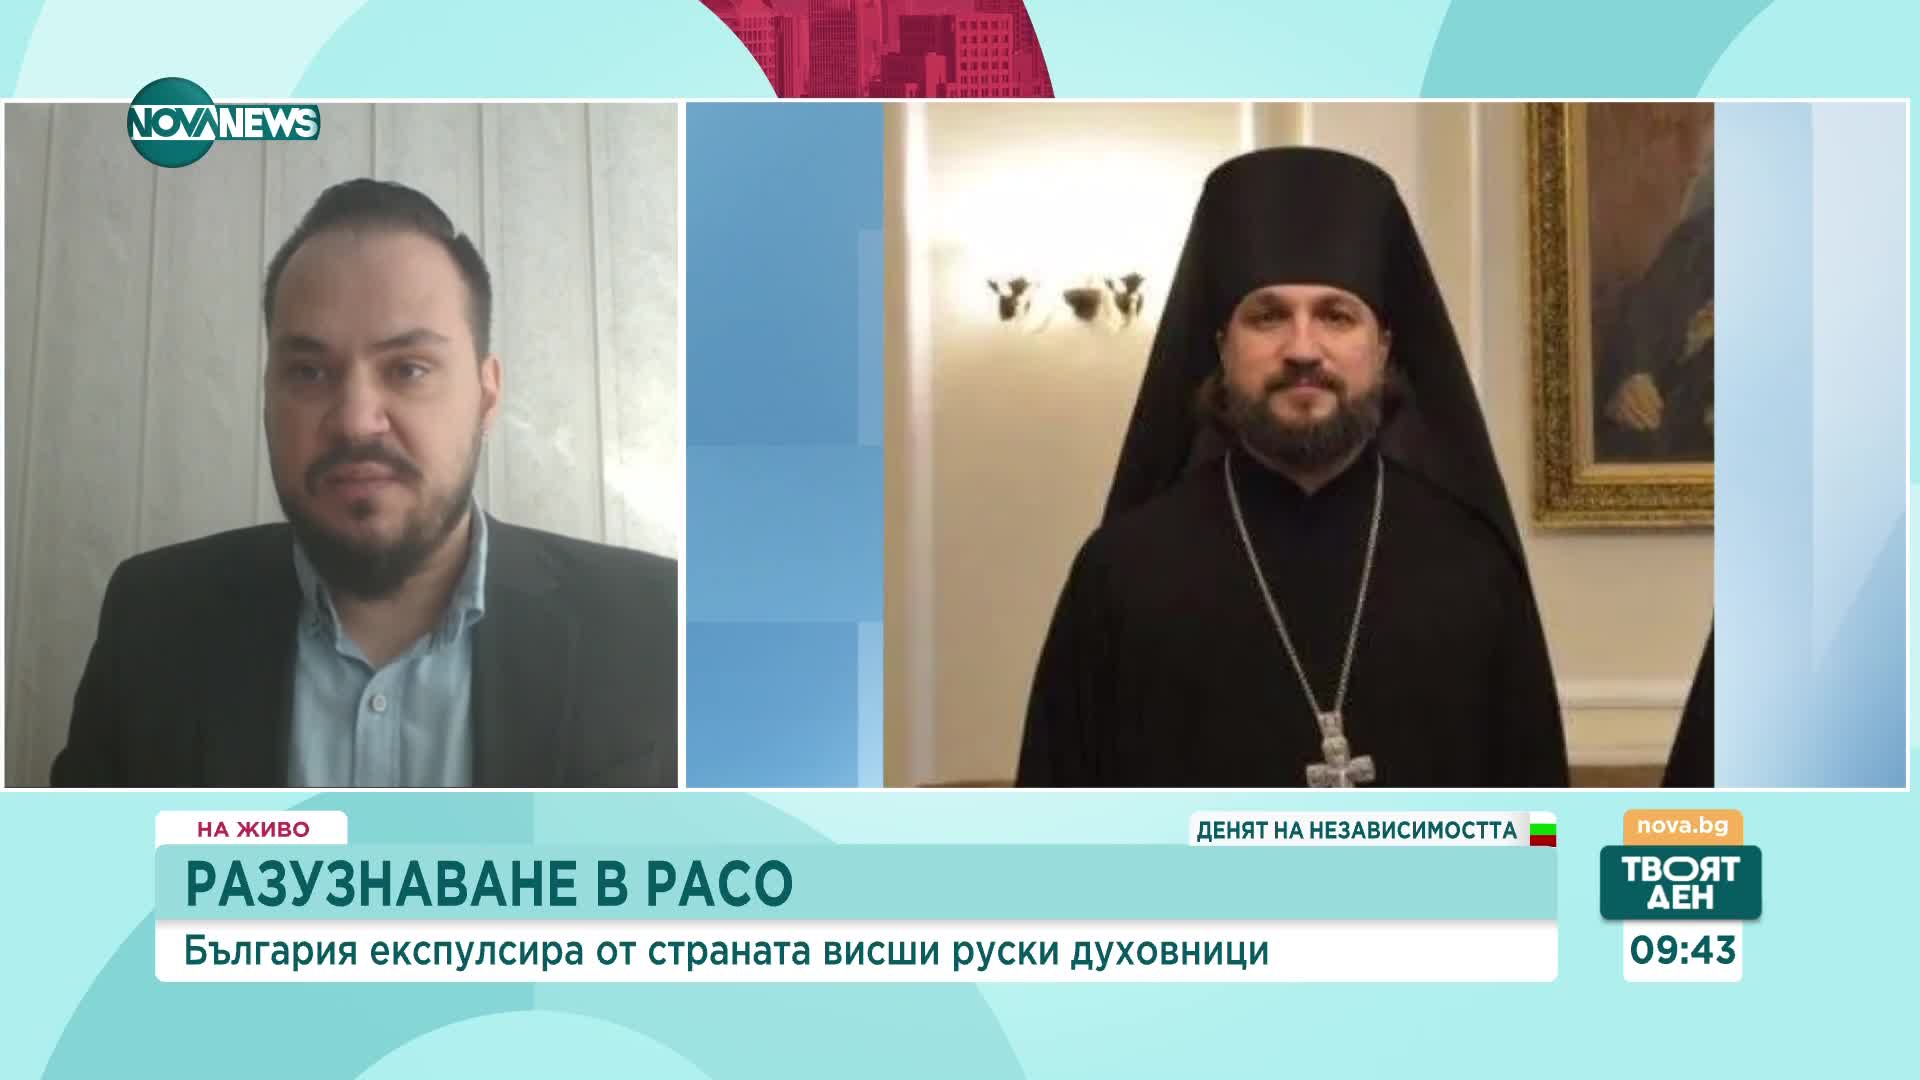 РАЗУЗНАВАНЕ В РАСО: Защитавали ли са български духовници интересите на Русия